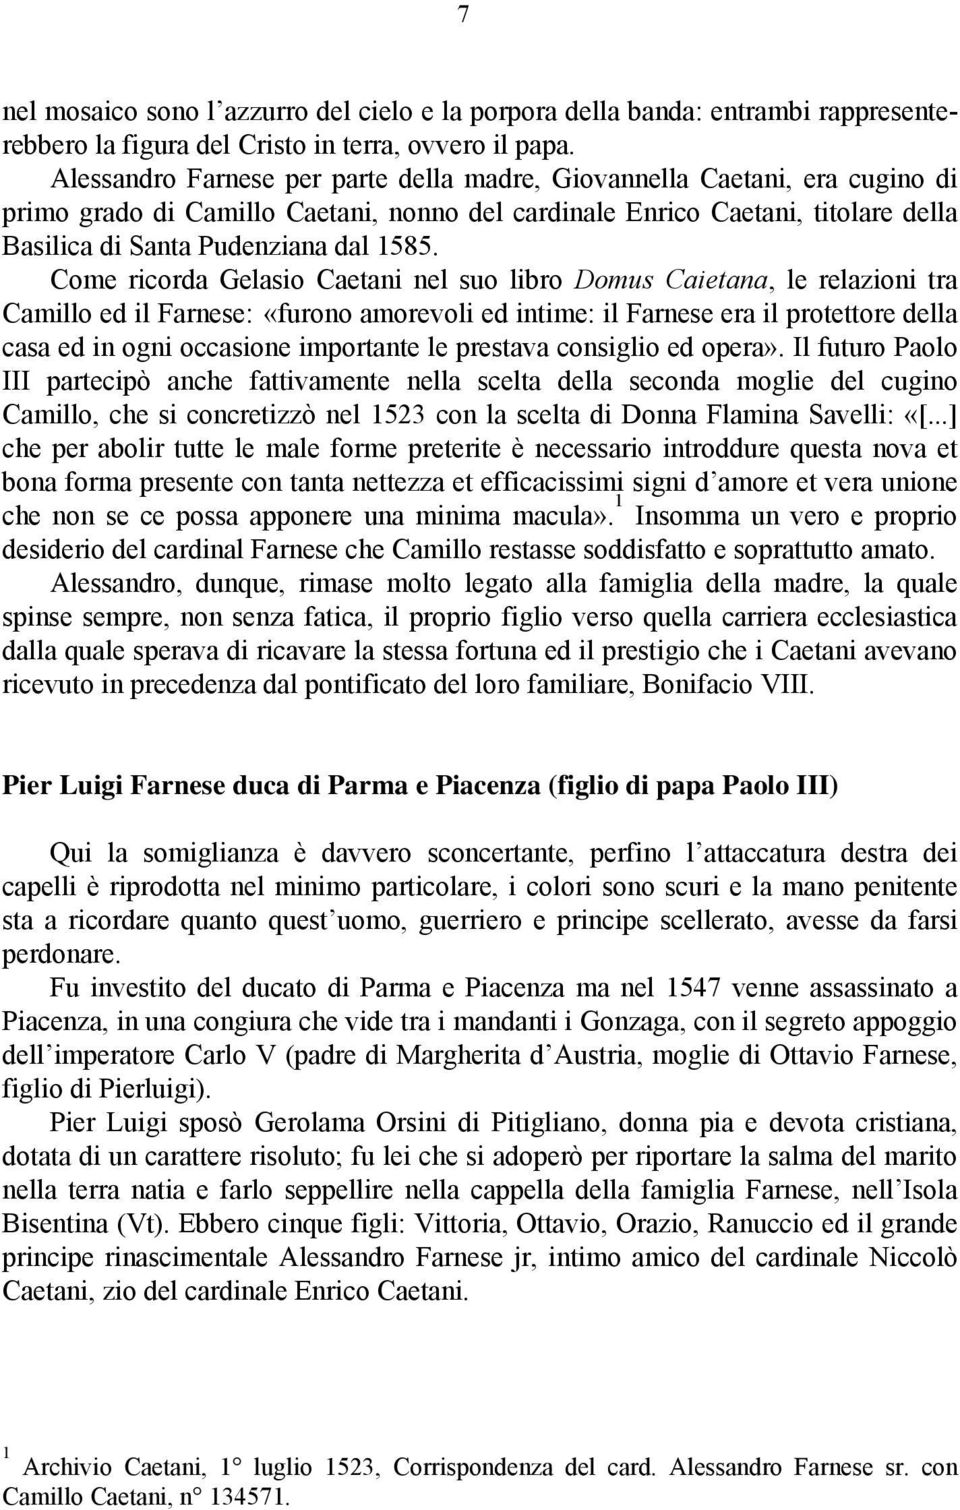 Come ricorda Gelasio Caetani nel suo libro Domus Caietana, le relazioni tra Camillo ed il Farnese: «furono amorevoli ed intime: il Farnese era il protettore della casa ed in ogni occasione importante